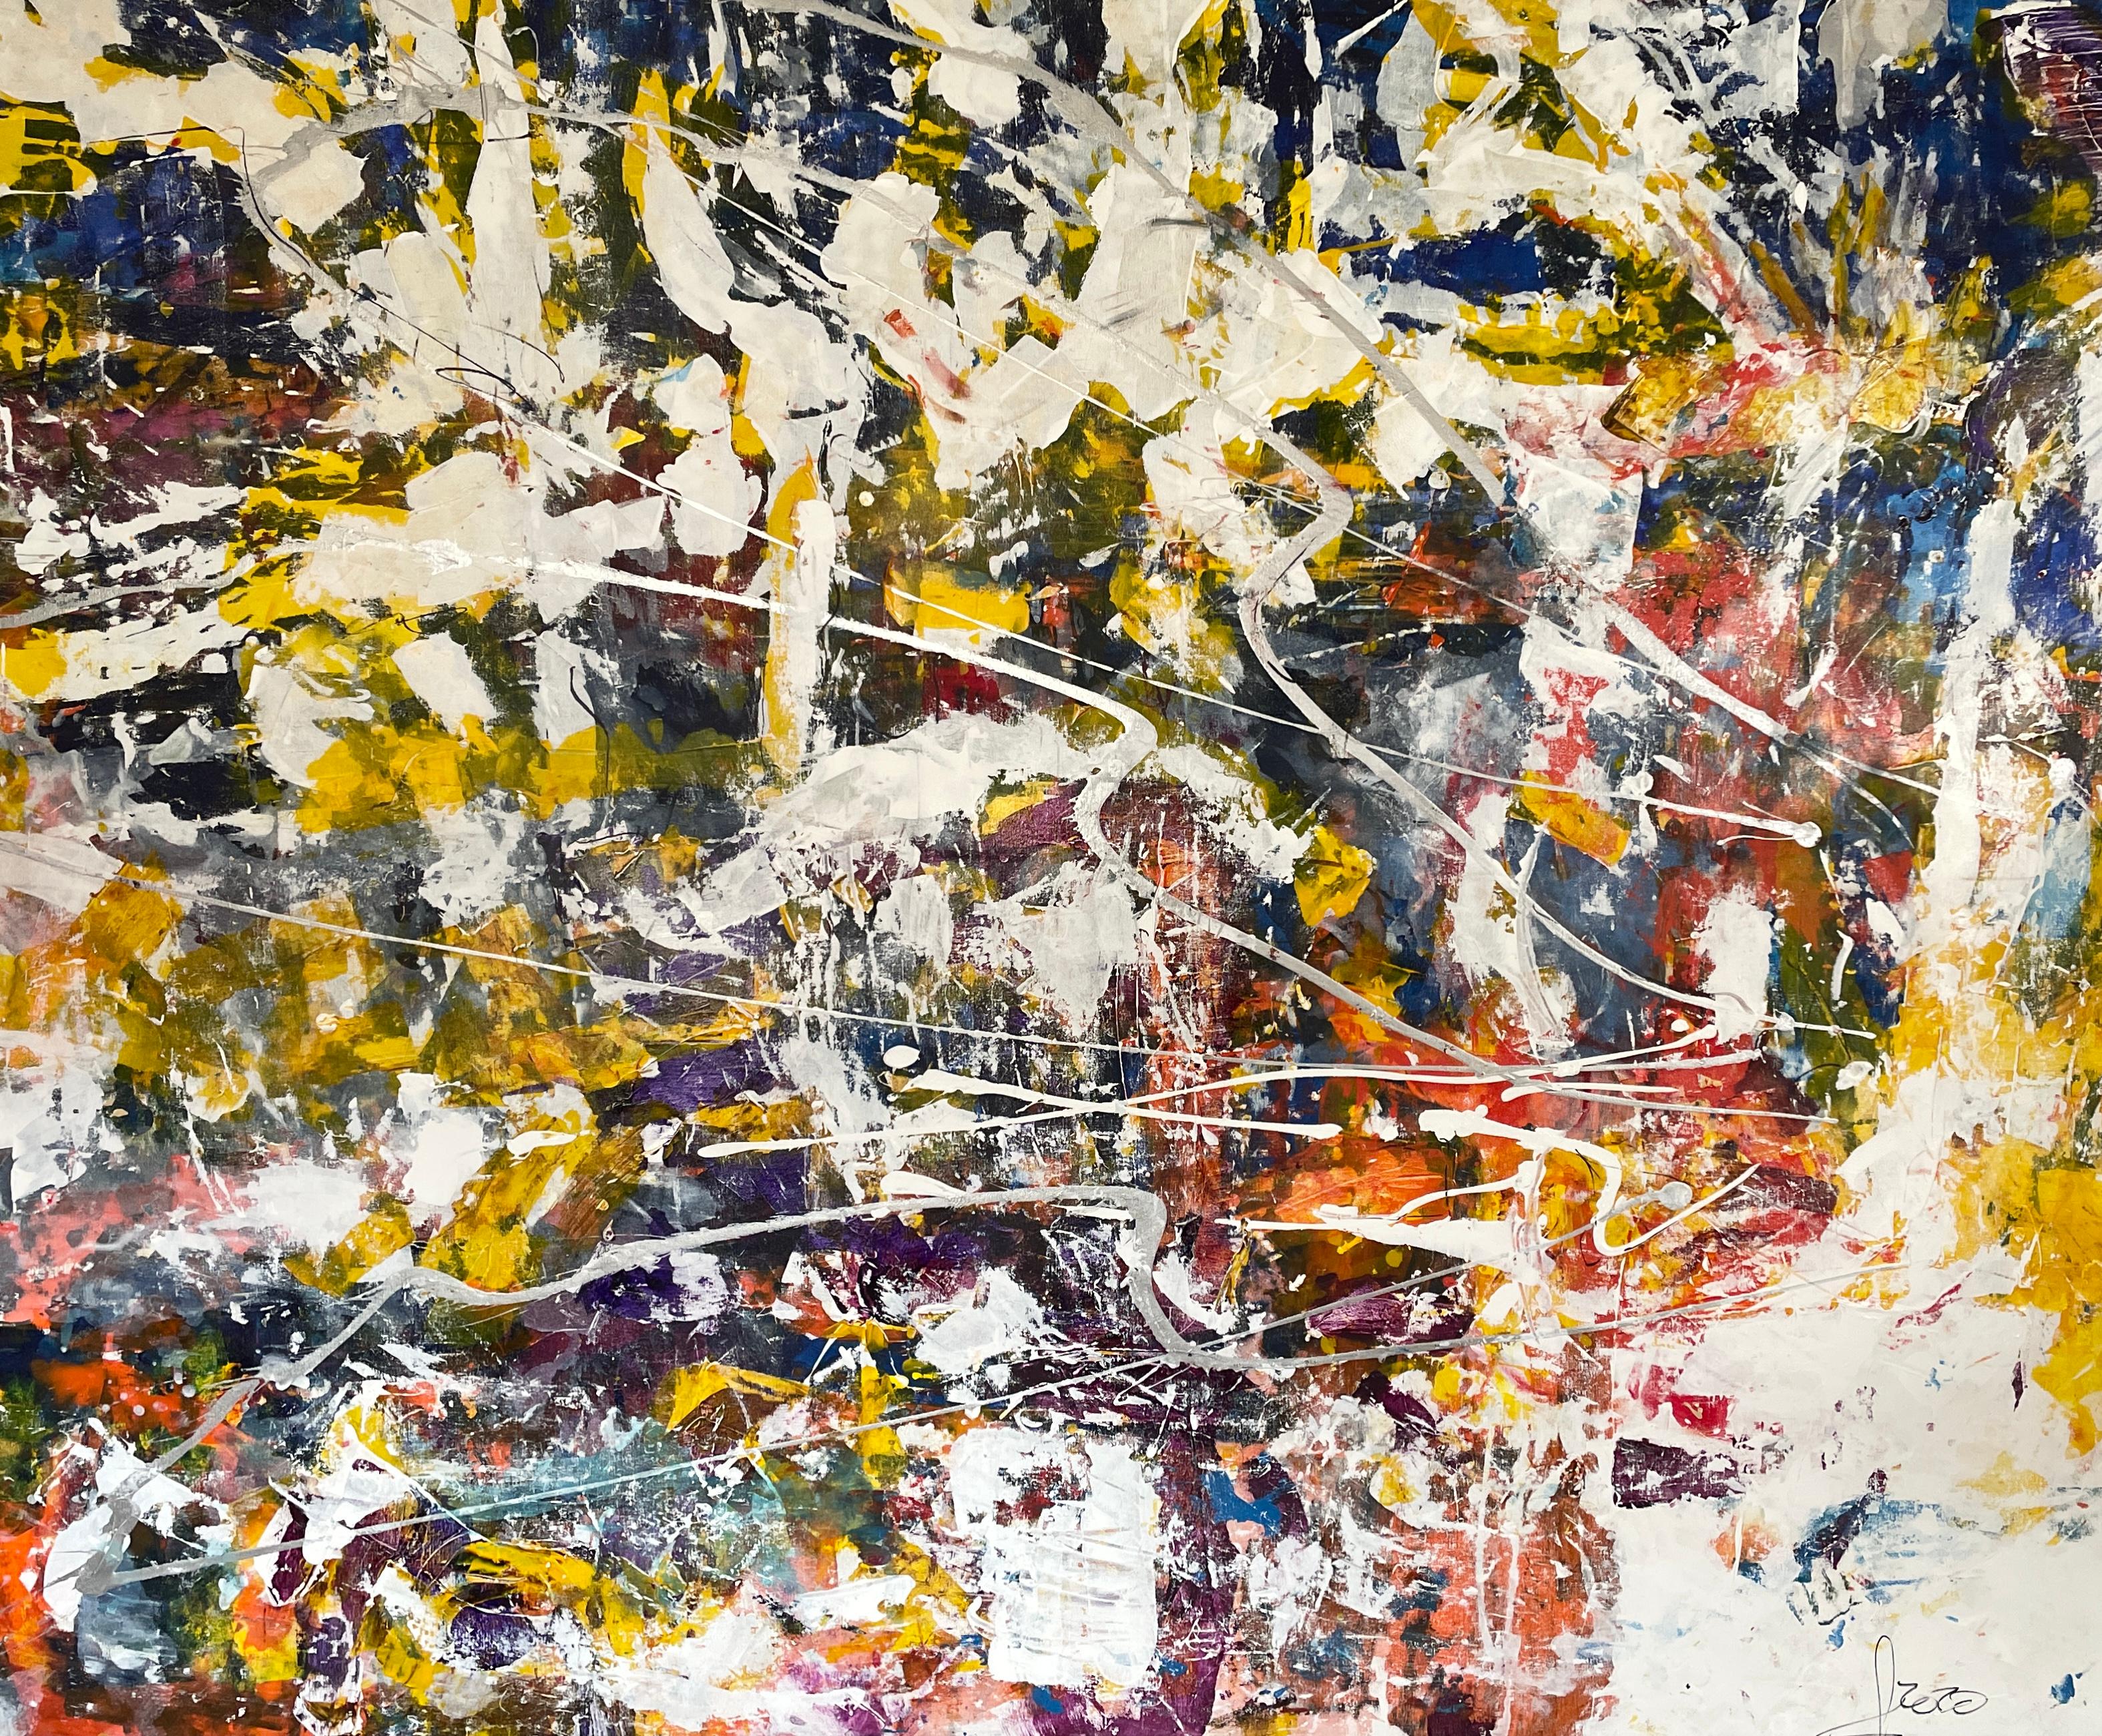 Abstract Painting Nan Van Ryzin - Into The Web" - Grande éclaboussure contemporaine - Expressionnisme abstrait